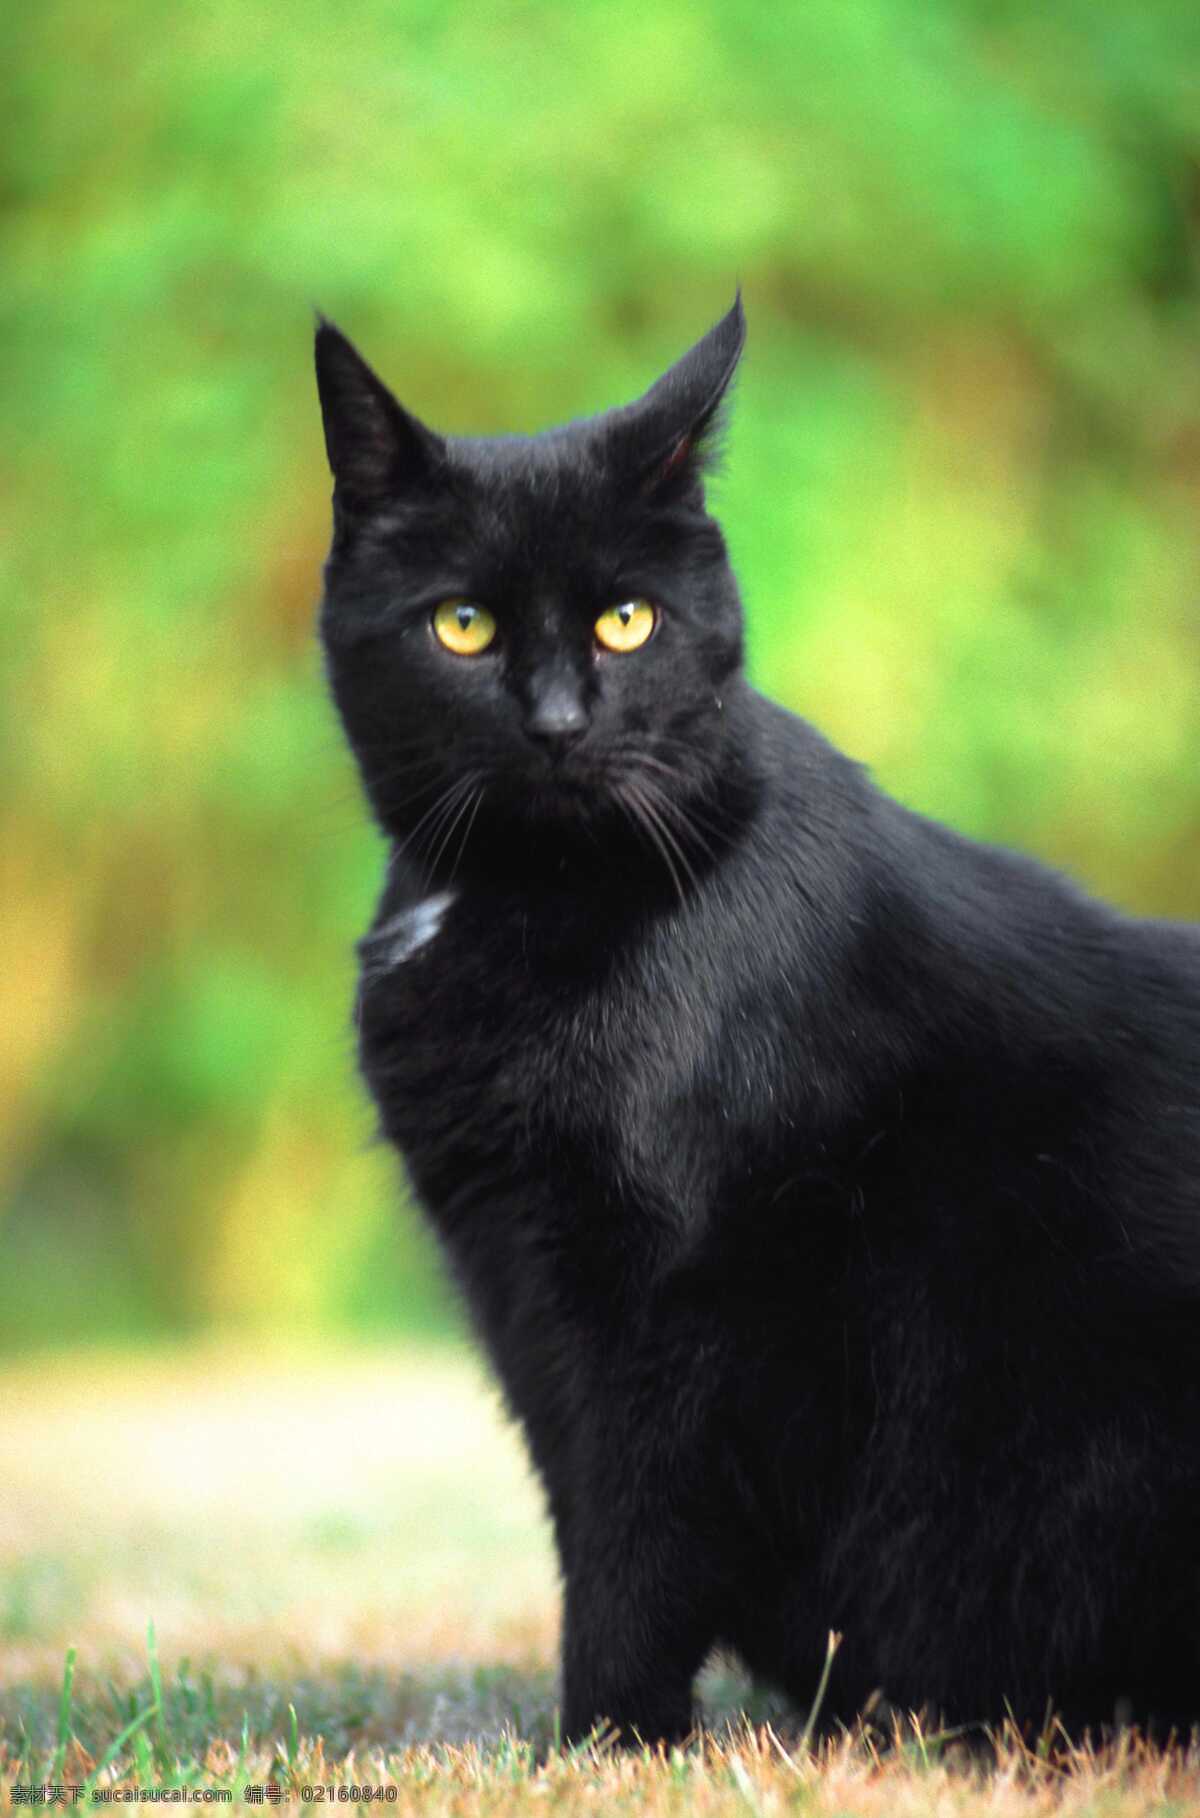 黑猫 猫 黑色 猫眼 动物世界 野生动物 生物世界